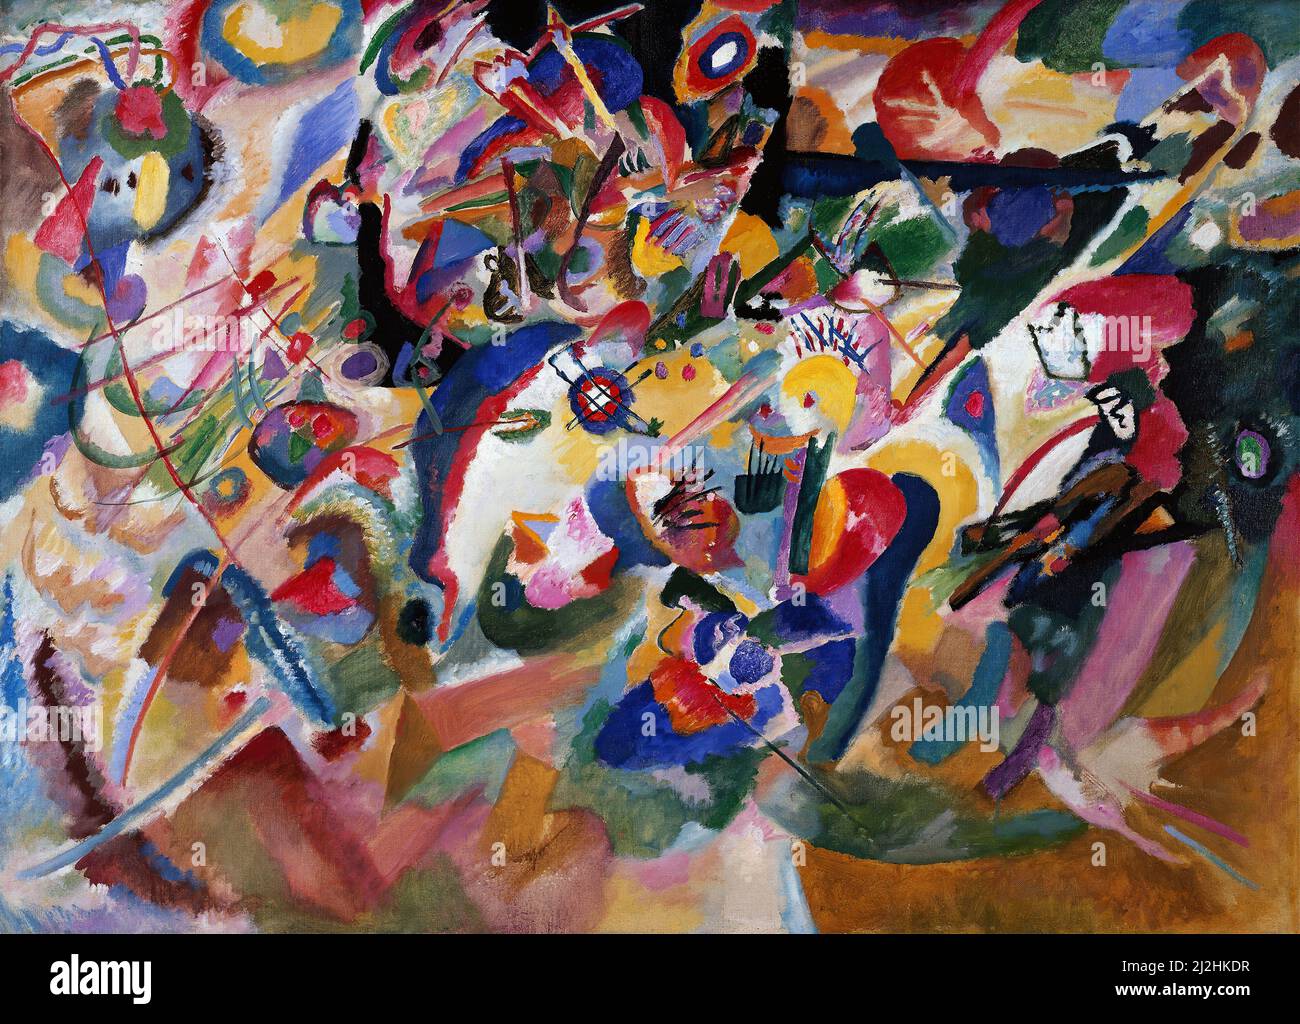 Gemälde von Wassily Kandinsky, 1910s. Entwurf 3 zu Komposition VII (1913) - Entwurf 3 für Komposition VII - Öl auf Leinwand Stockfoto